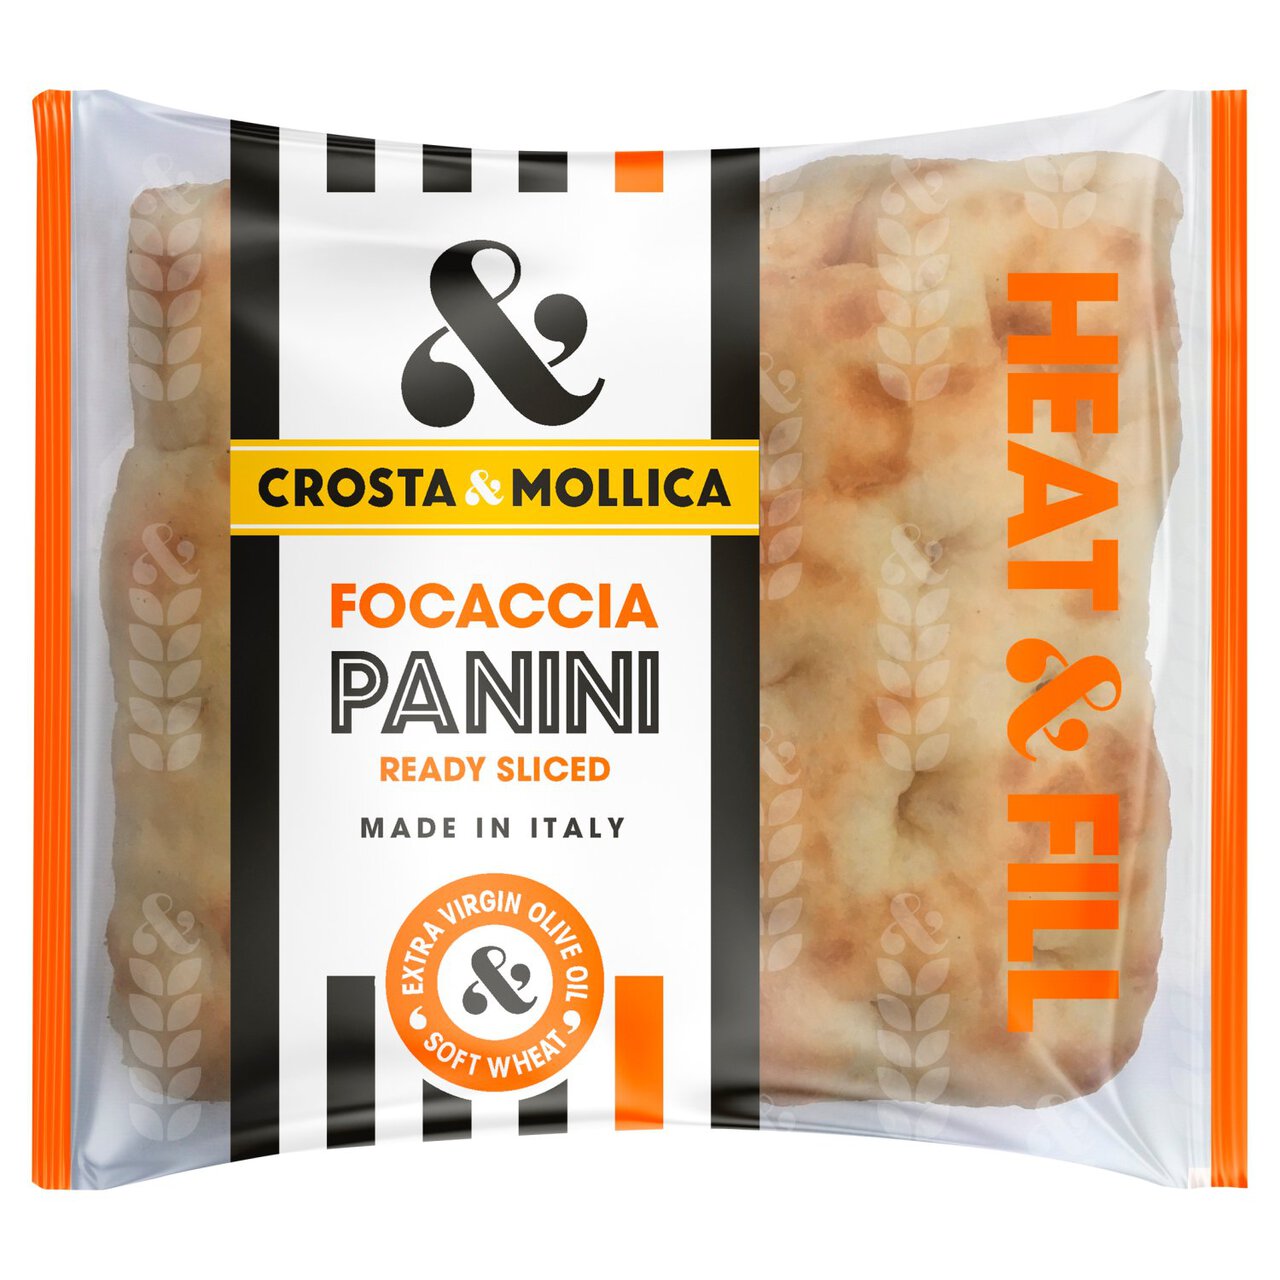 Crosta & Mollica Focaccia Panini 2 x 80g